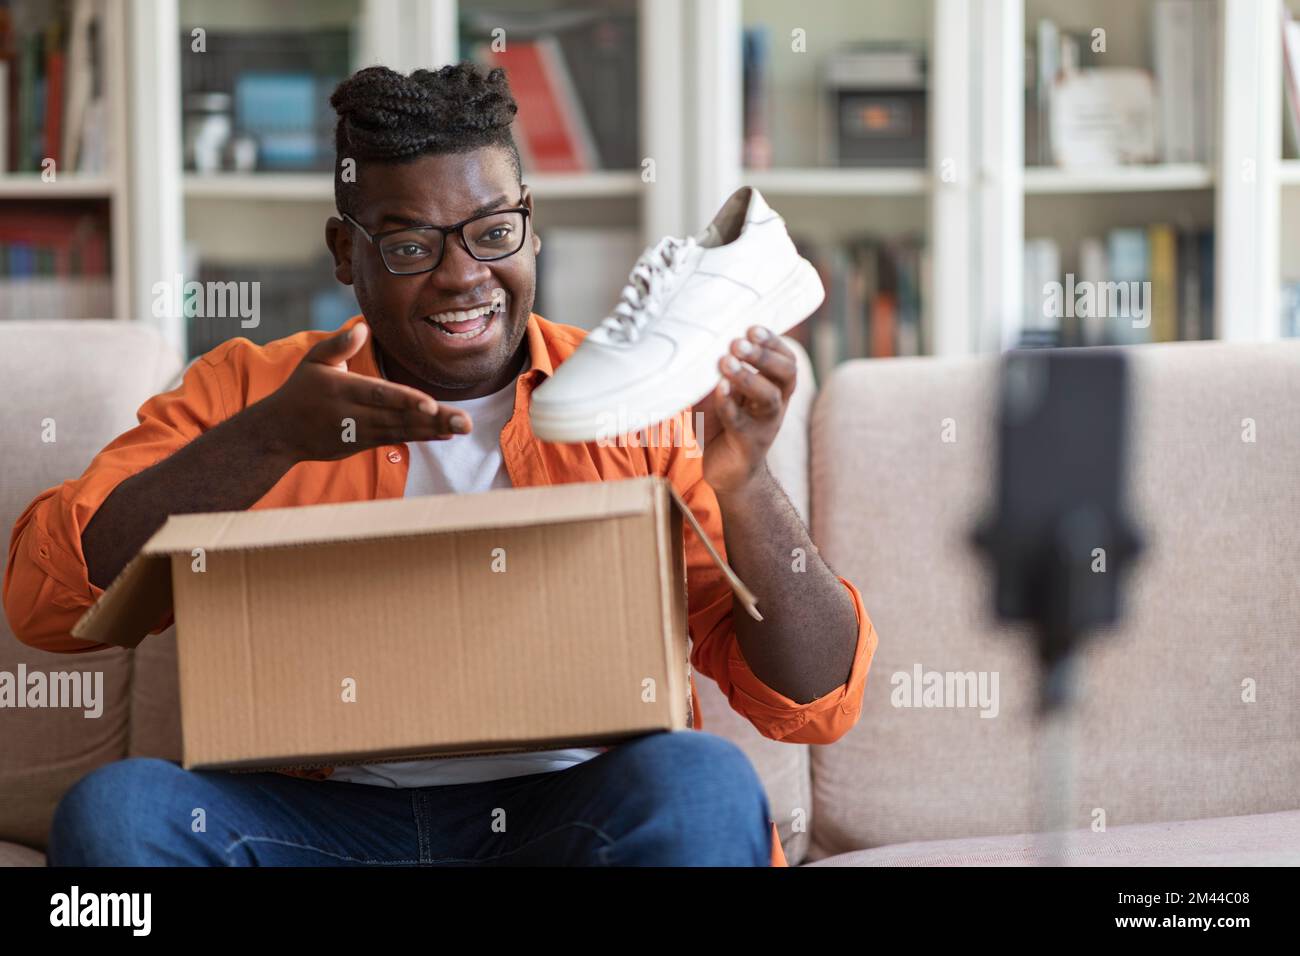 Un homme noir d'influence sur les médias sociaux examine les nouvelles chaussures Banque D'Images